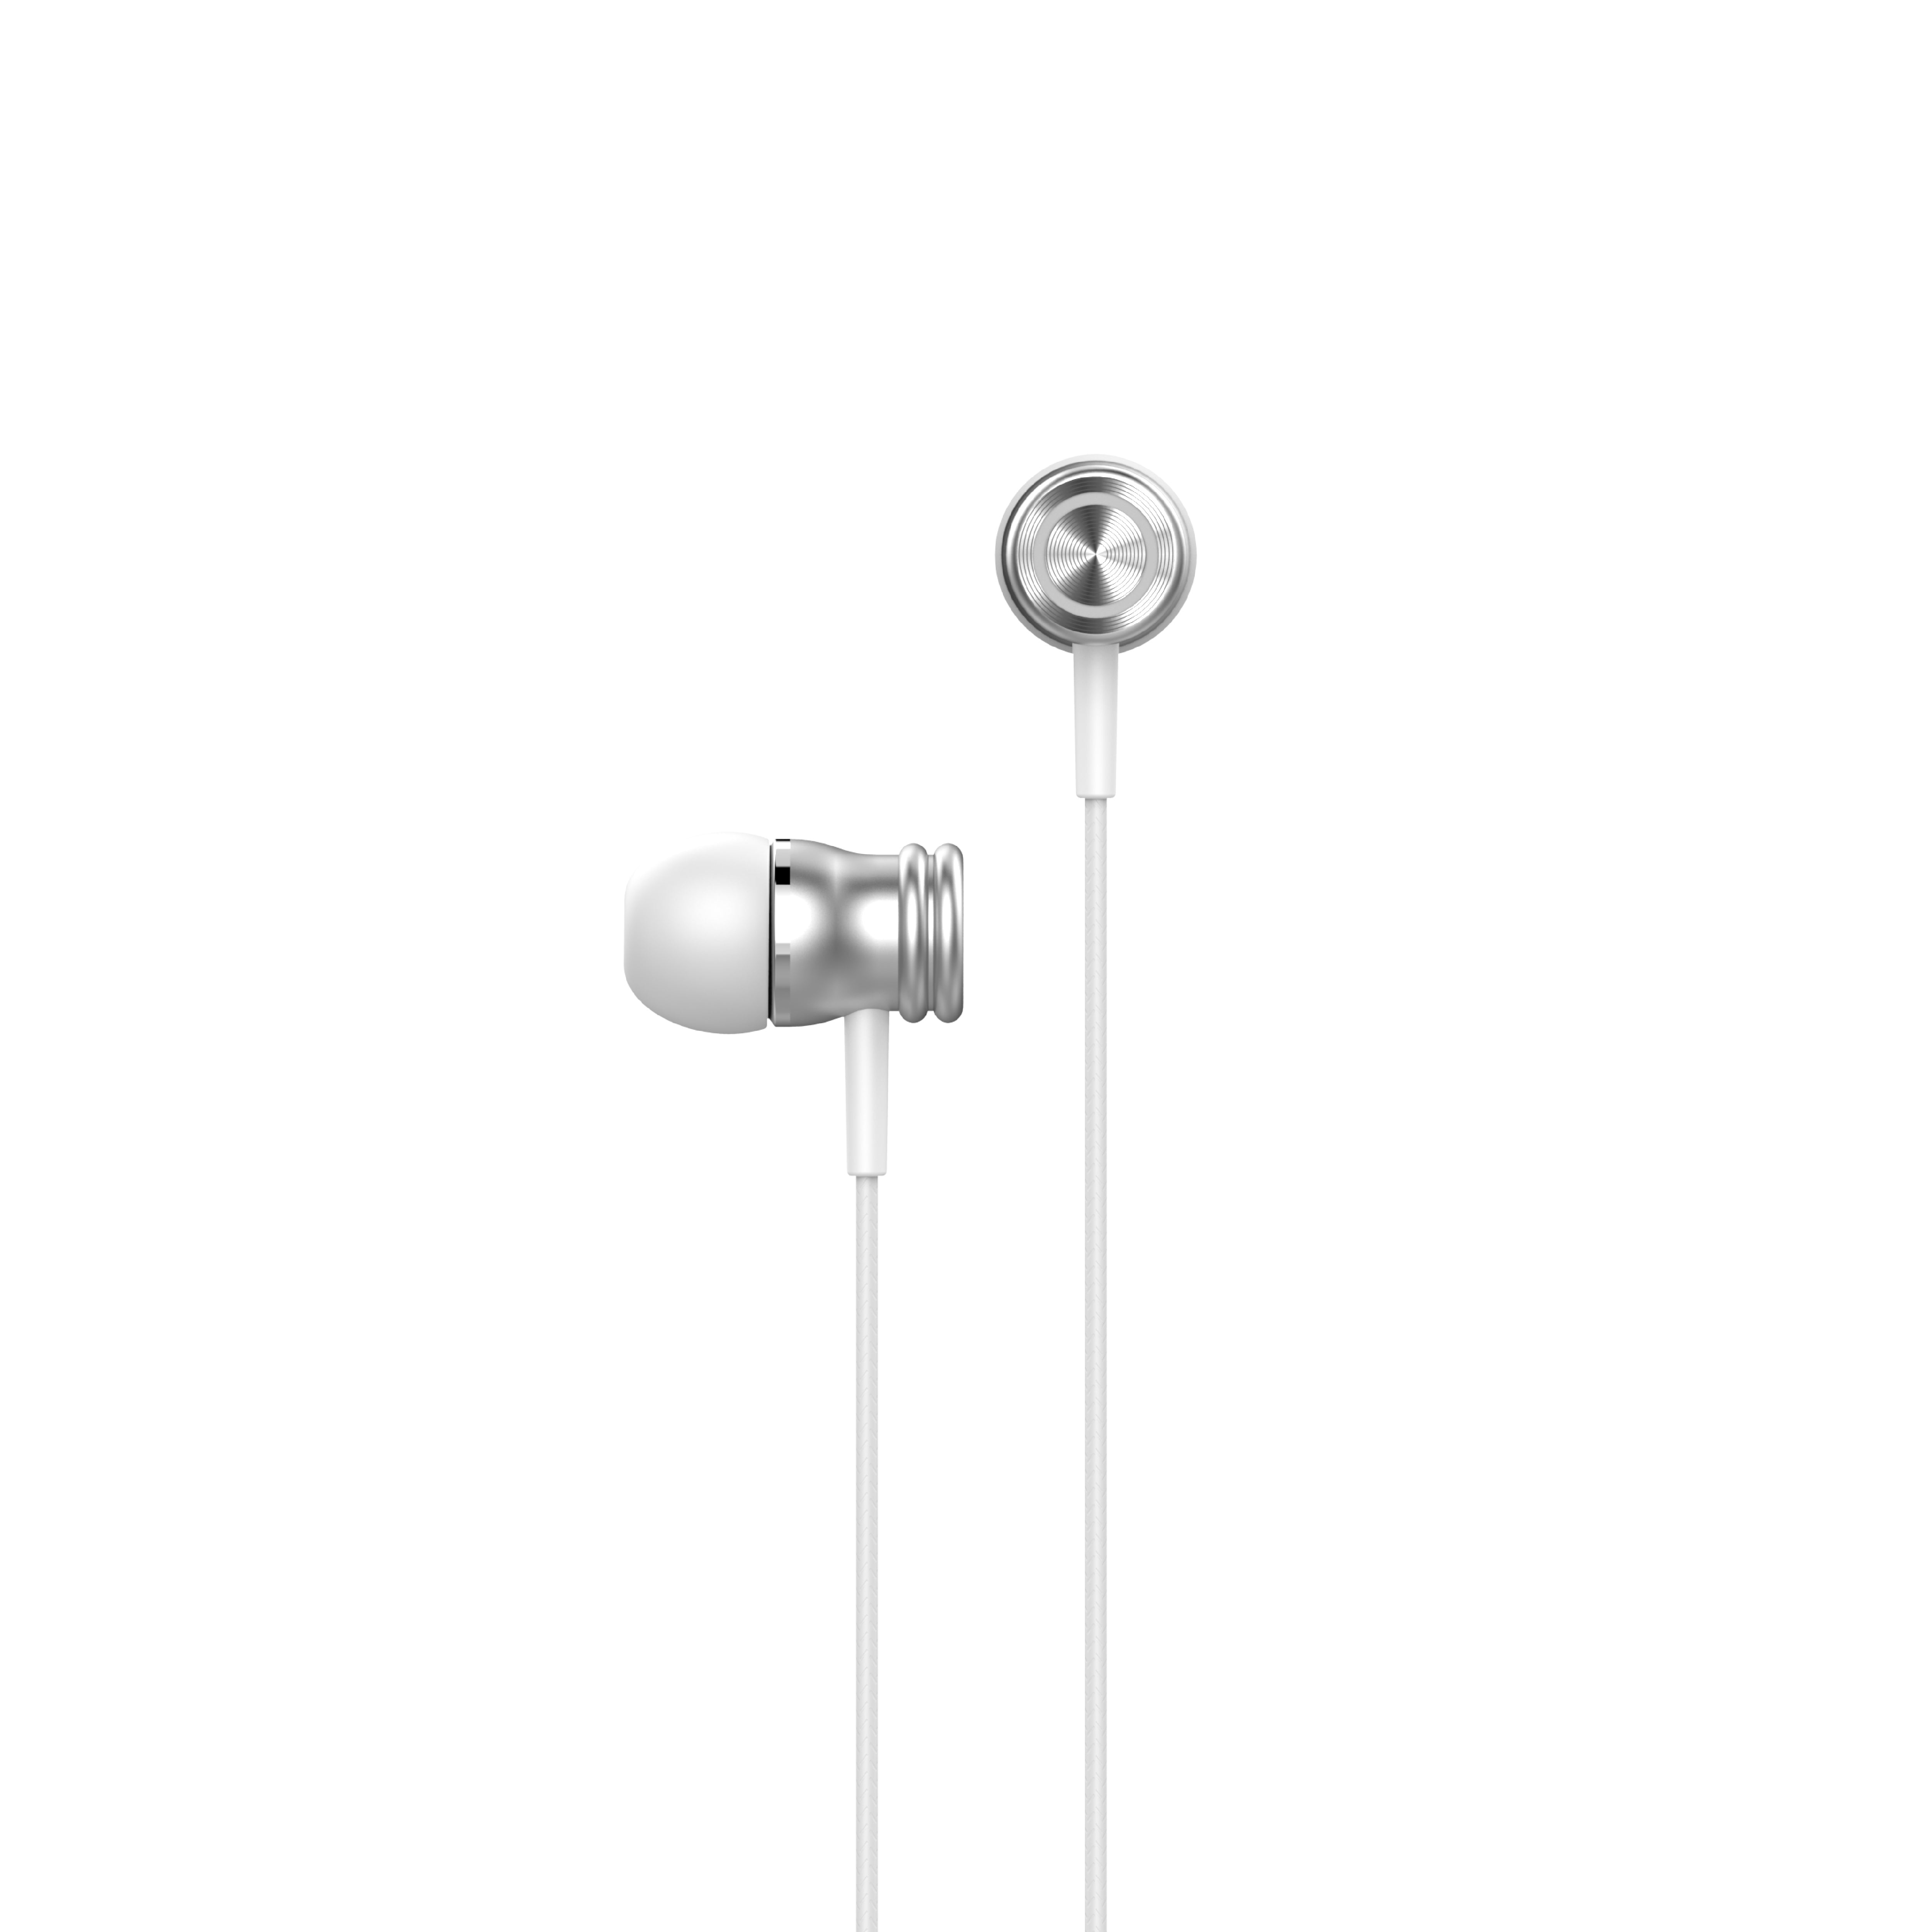 HAVIT E303P In-ear 3.5mm Wired Earbuds